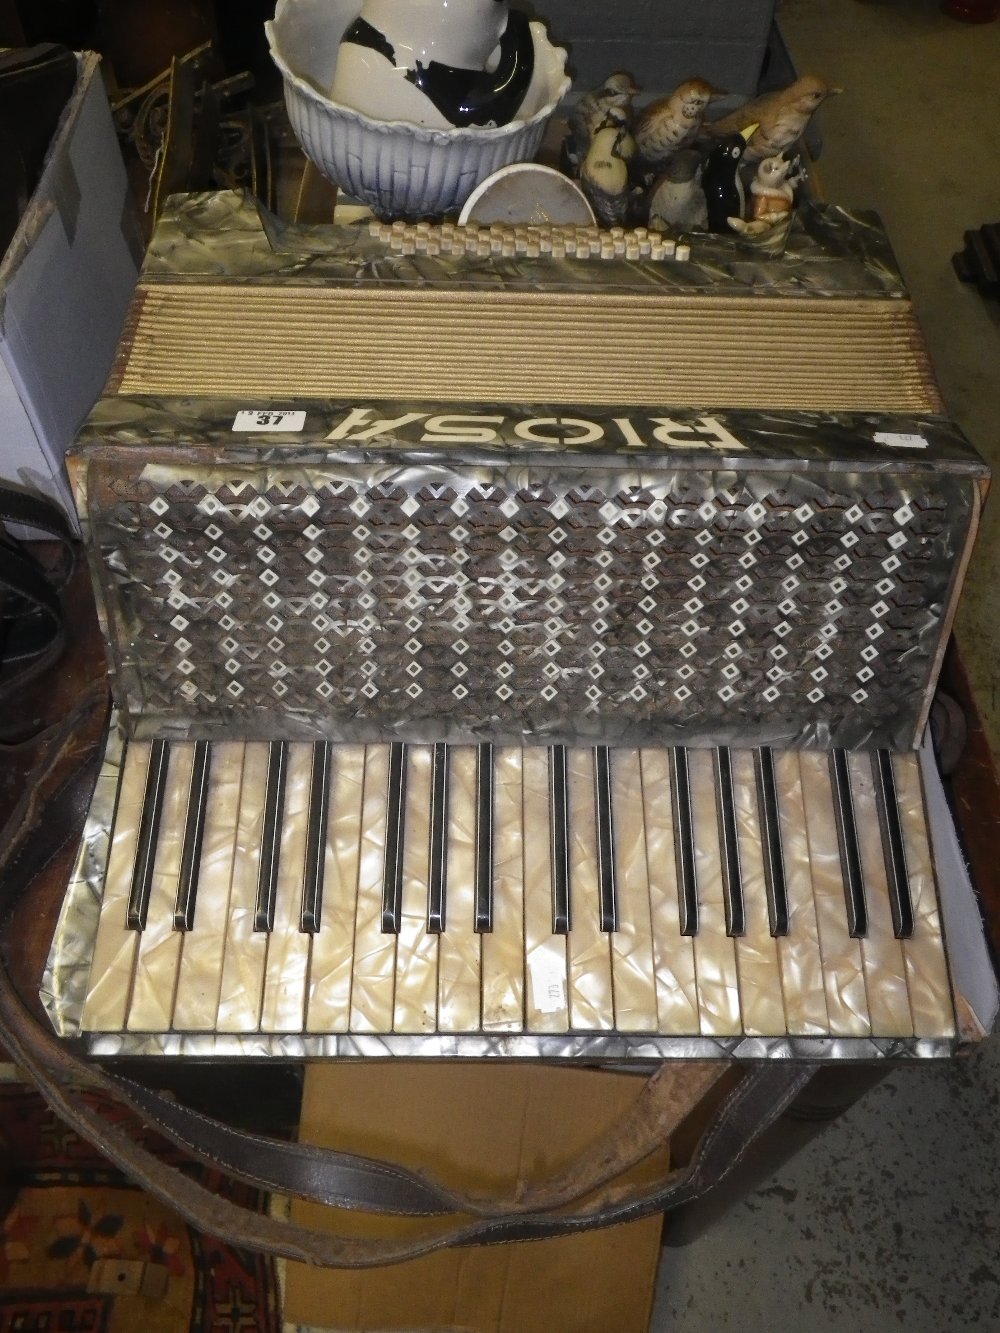 A vintage Riosa piano accordion